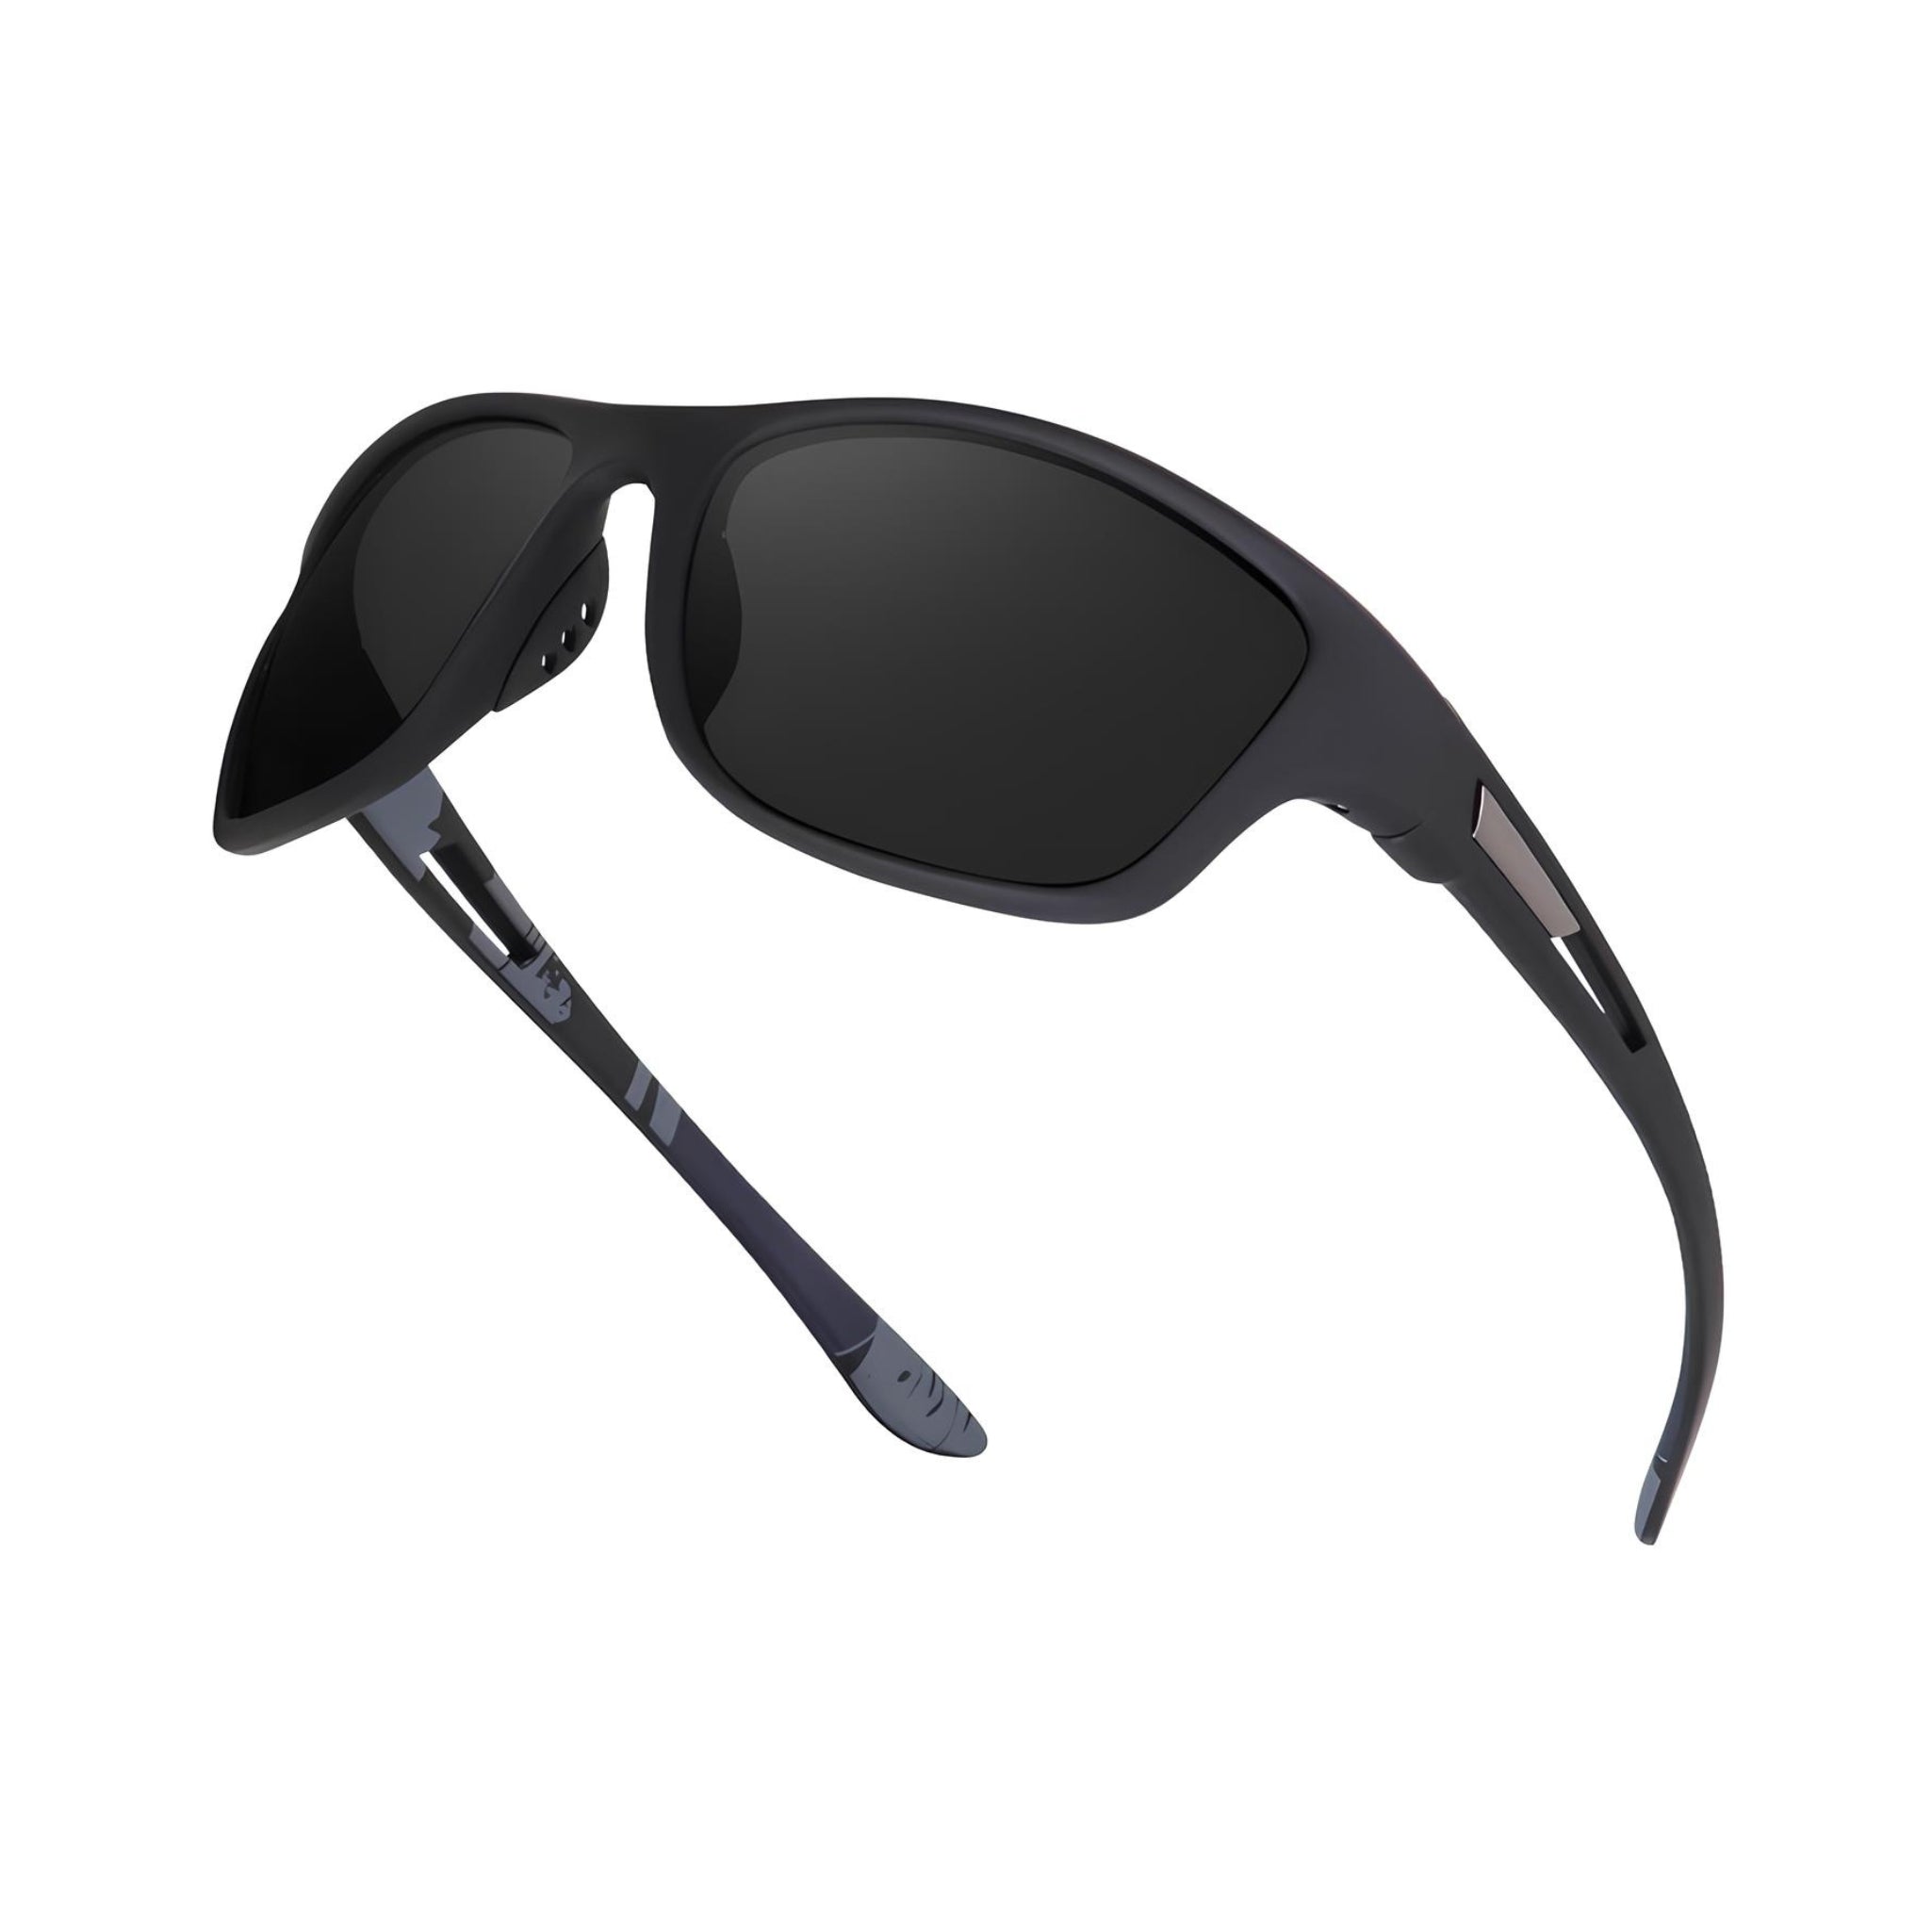 Xplorer Series Polarized Sports Sunglasses - Black